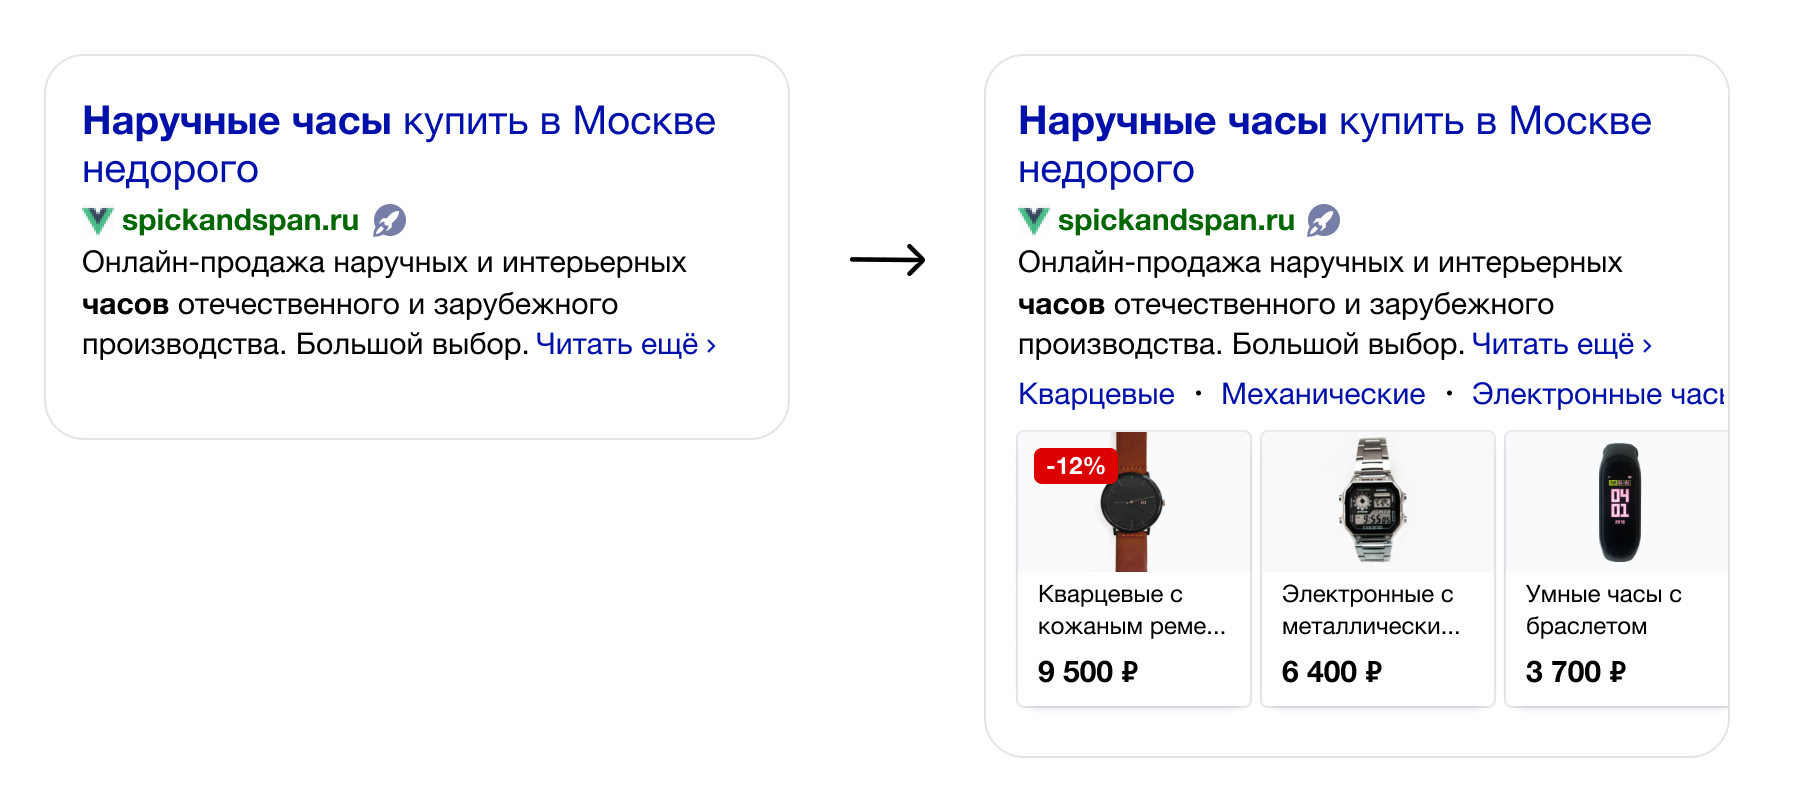 Карусели с товарами Яндекс Дзен